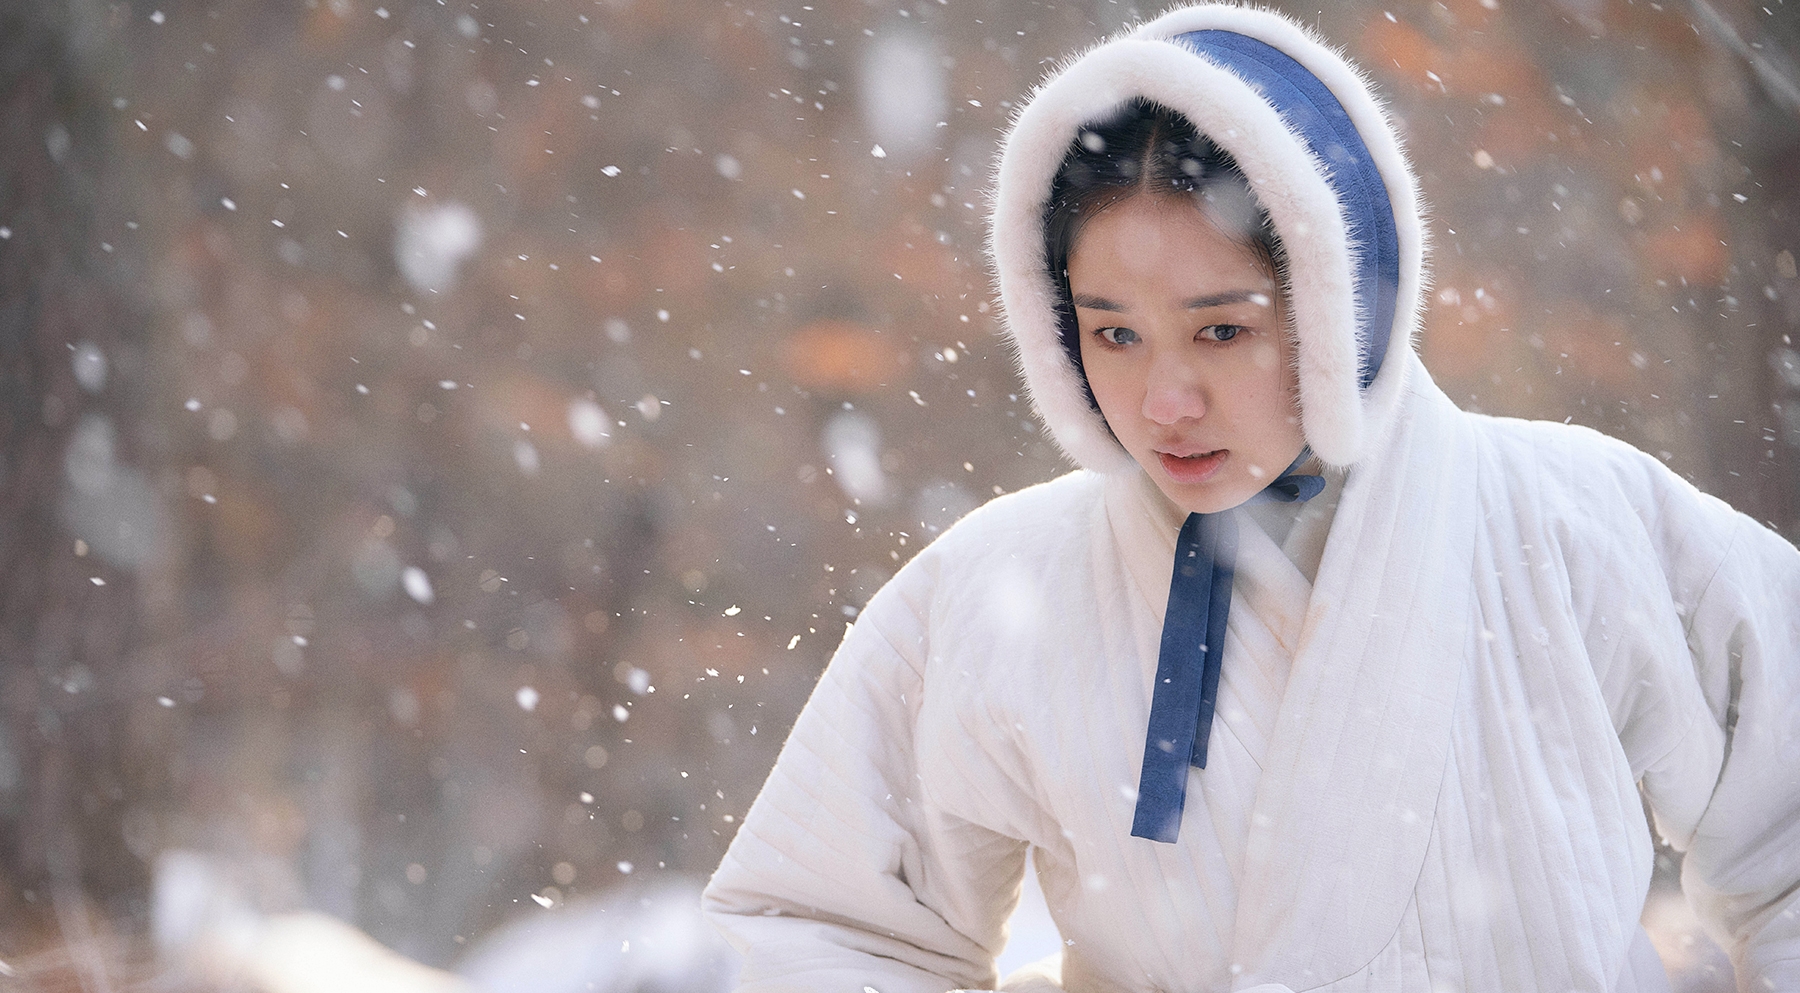 Trên màn ảnh, Ahn Eun Jin được khen tỏa sáng khi hóa thân thành Gil Chae - tiểu thư nhà giàu thông minh, nhưng biết thích nghi với hoàn cảnh. Daum khen, nữ diễn viên truyền tải tinh tế diễn biến tâm lí, cảm xúc của nhân vật.  